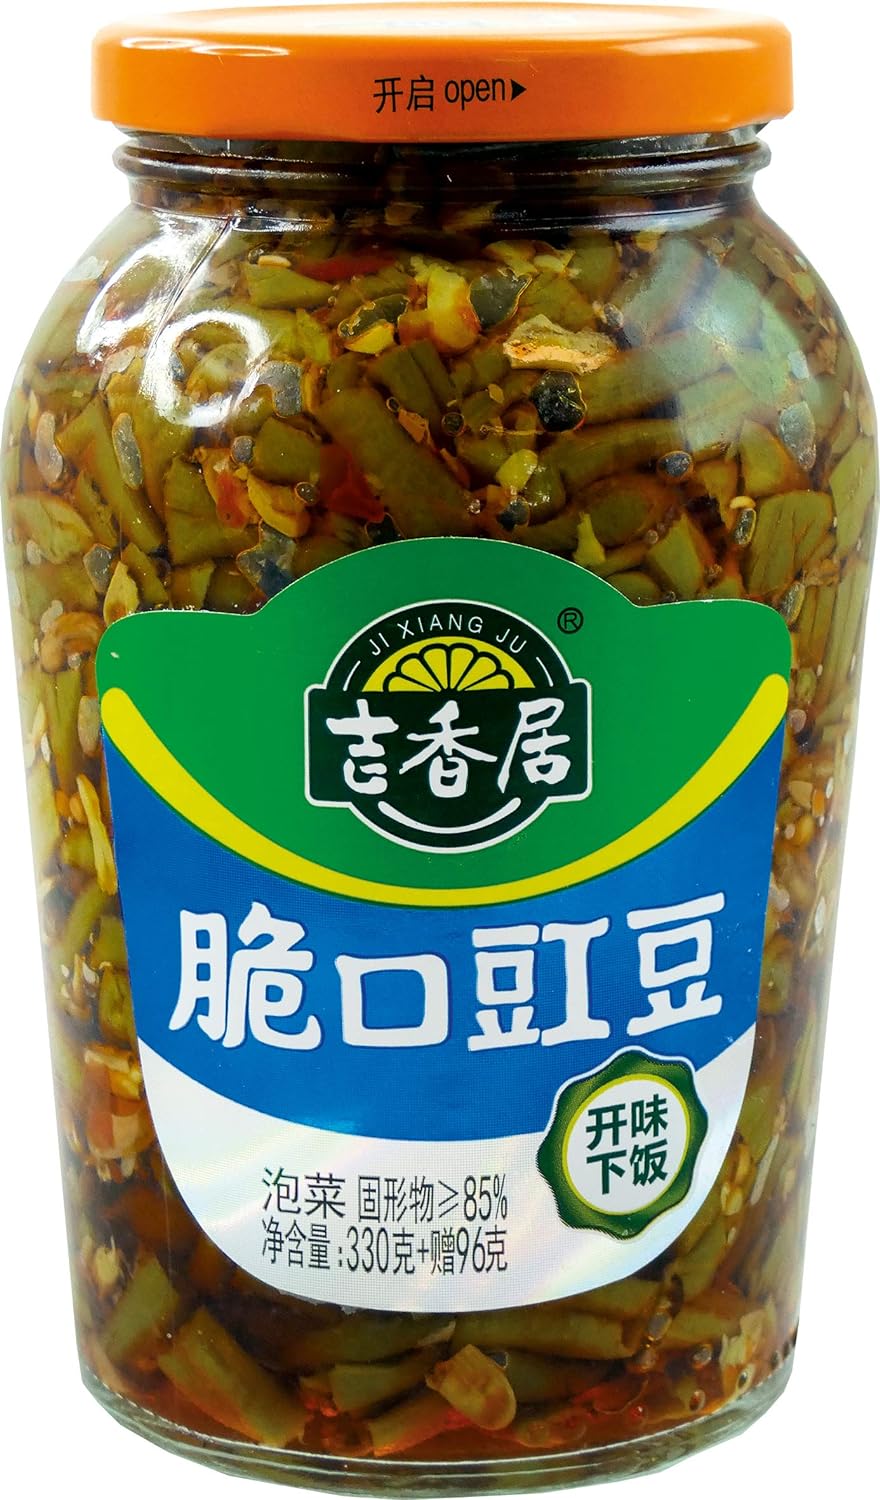 瓶装 吉香居脆口豇豆 漬物 スパイシザーサイ 味付けジュウロクササゲ おつまみ 426g 中国産